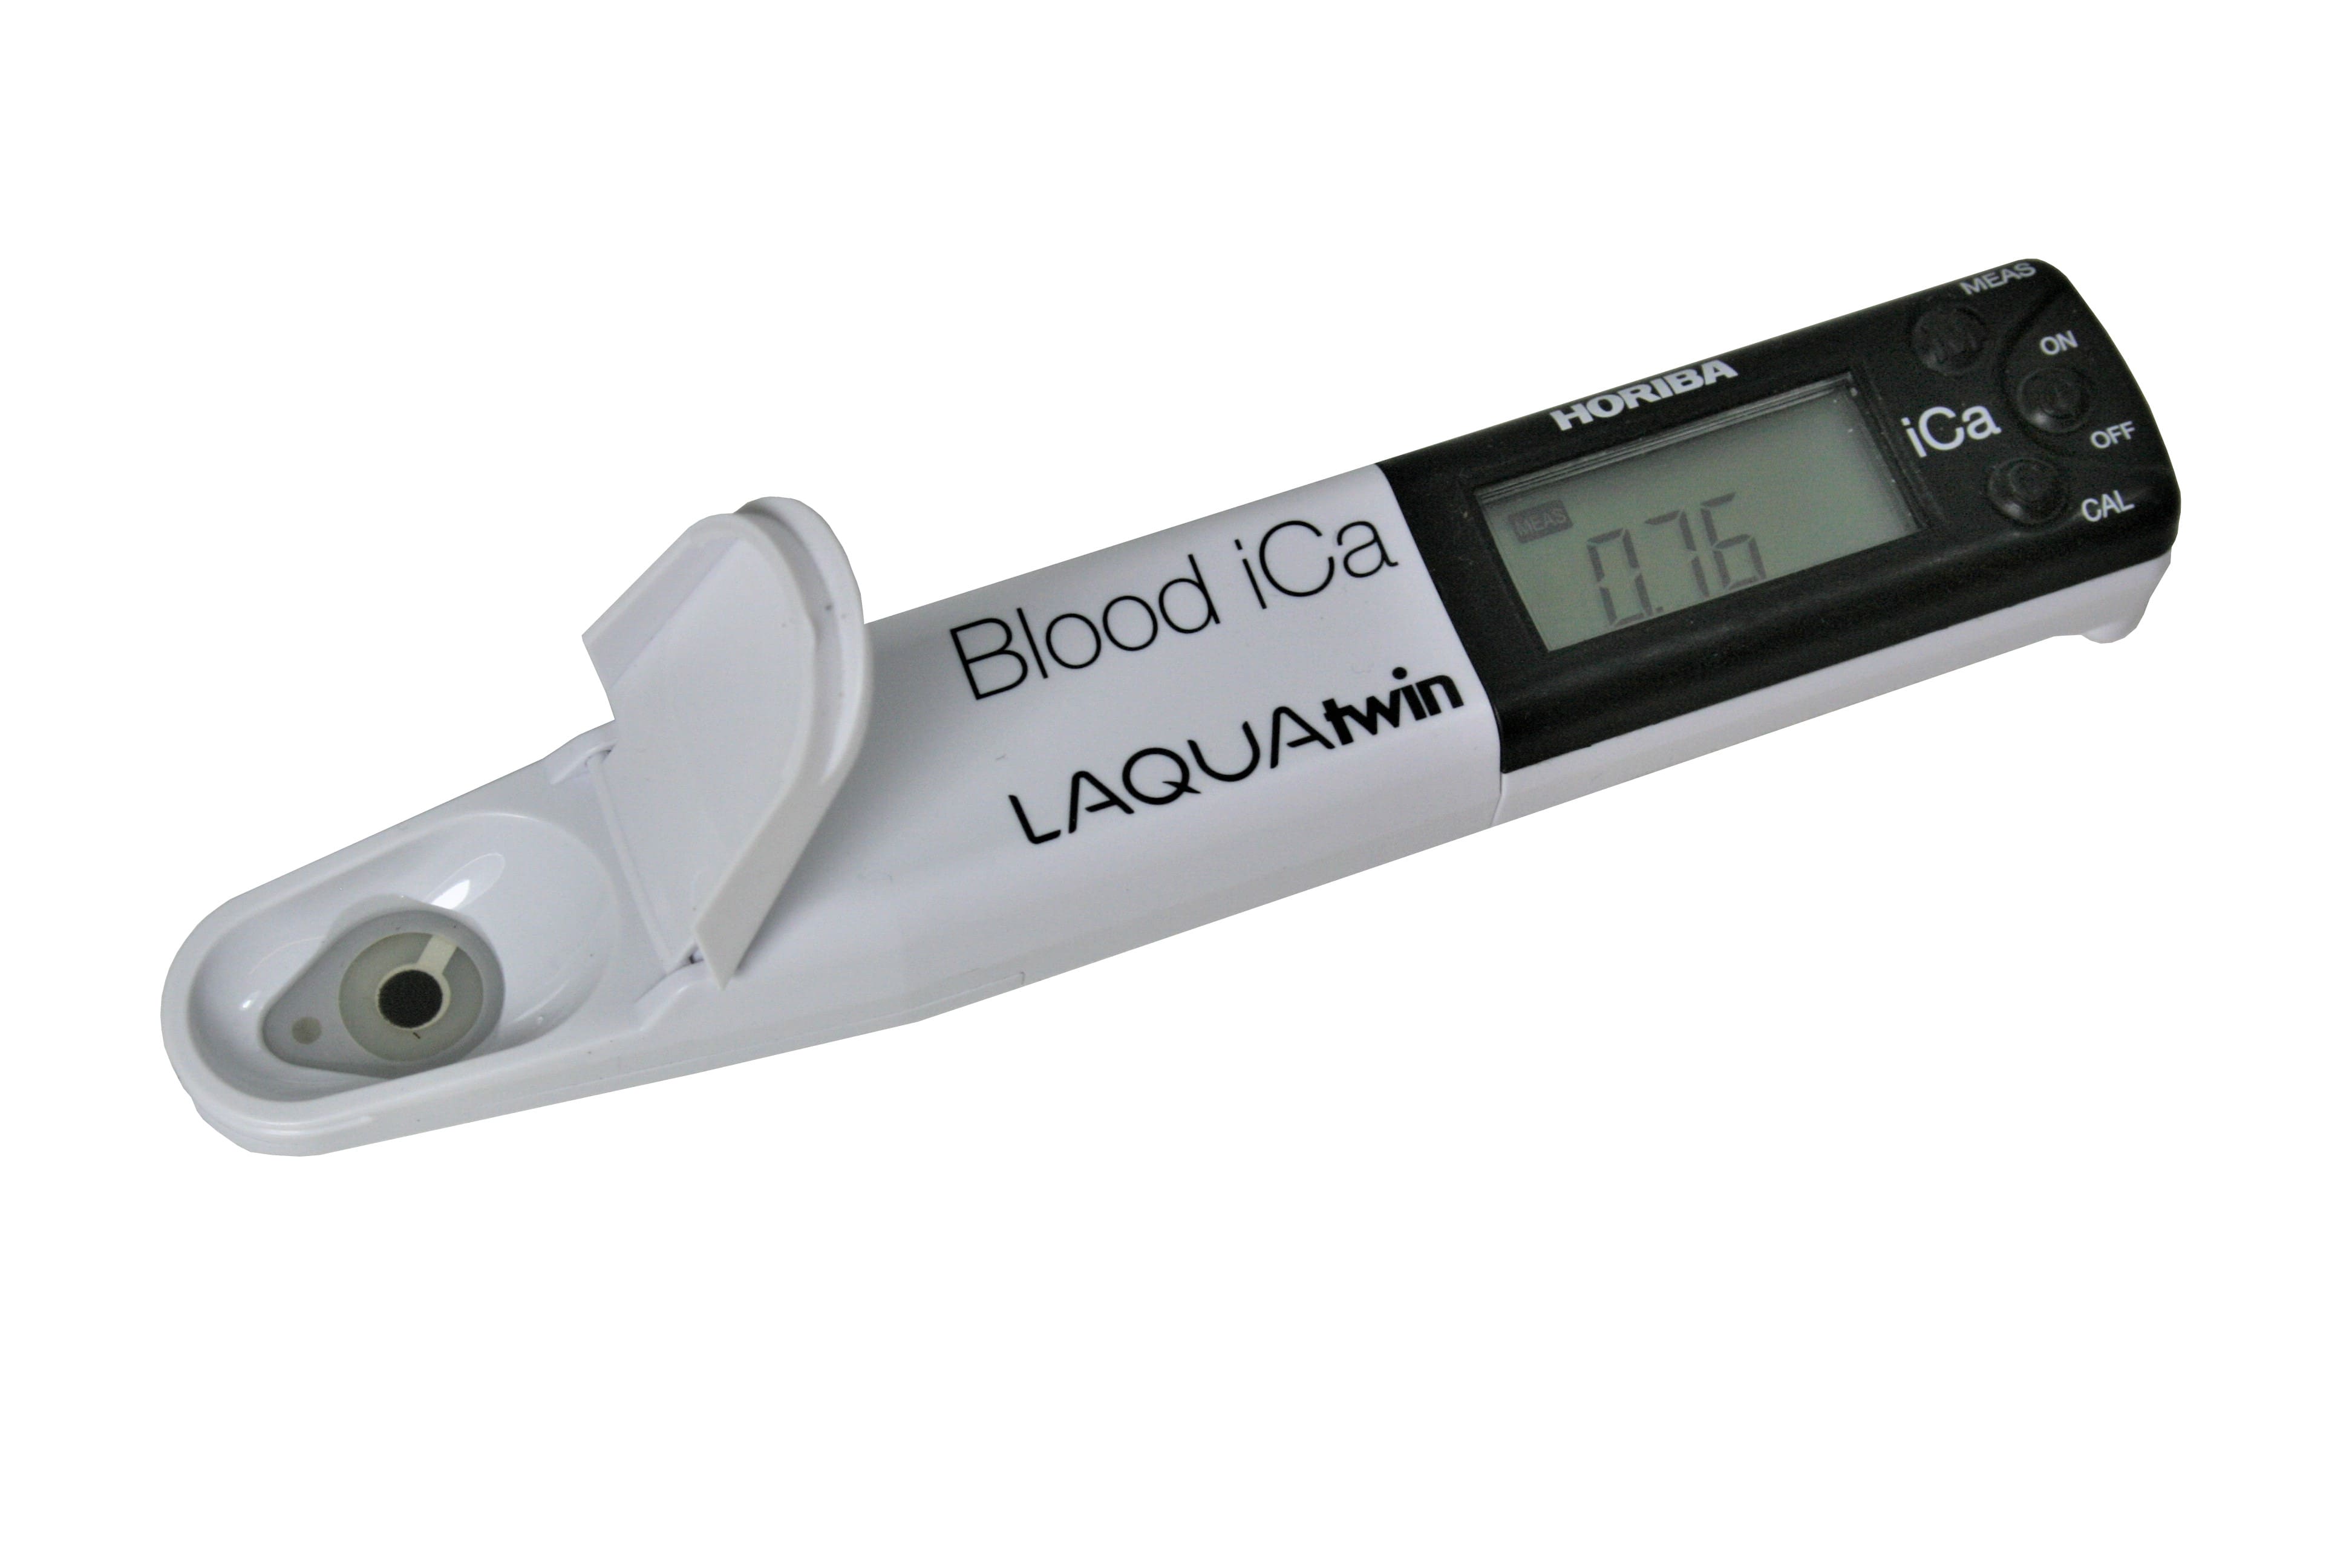 Измерение ионов в воде. HORIBA LAQUATWIN CA-11c-1. Измеритель кальция в воде. Измеритель кальция в крови коров. HORIBA LAQUATWIN набор.